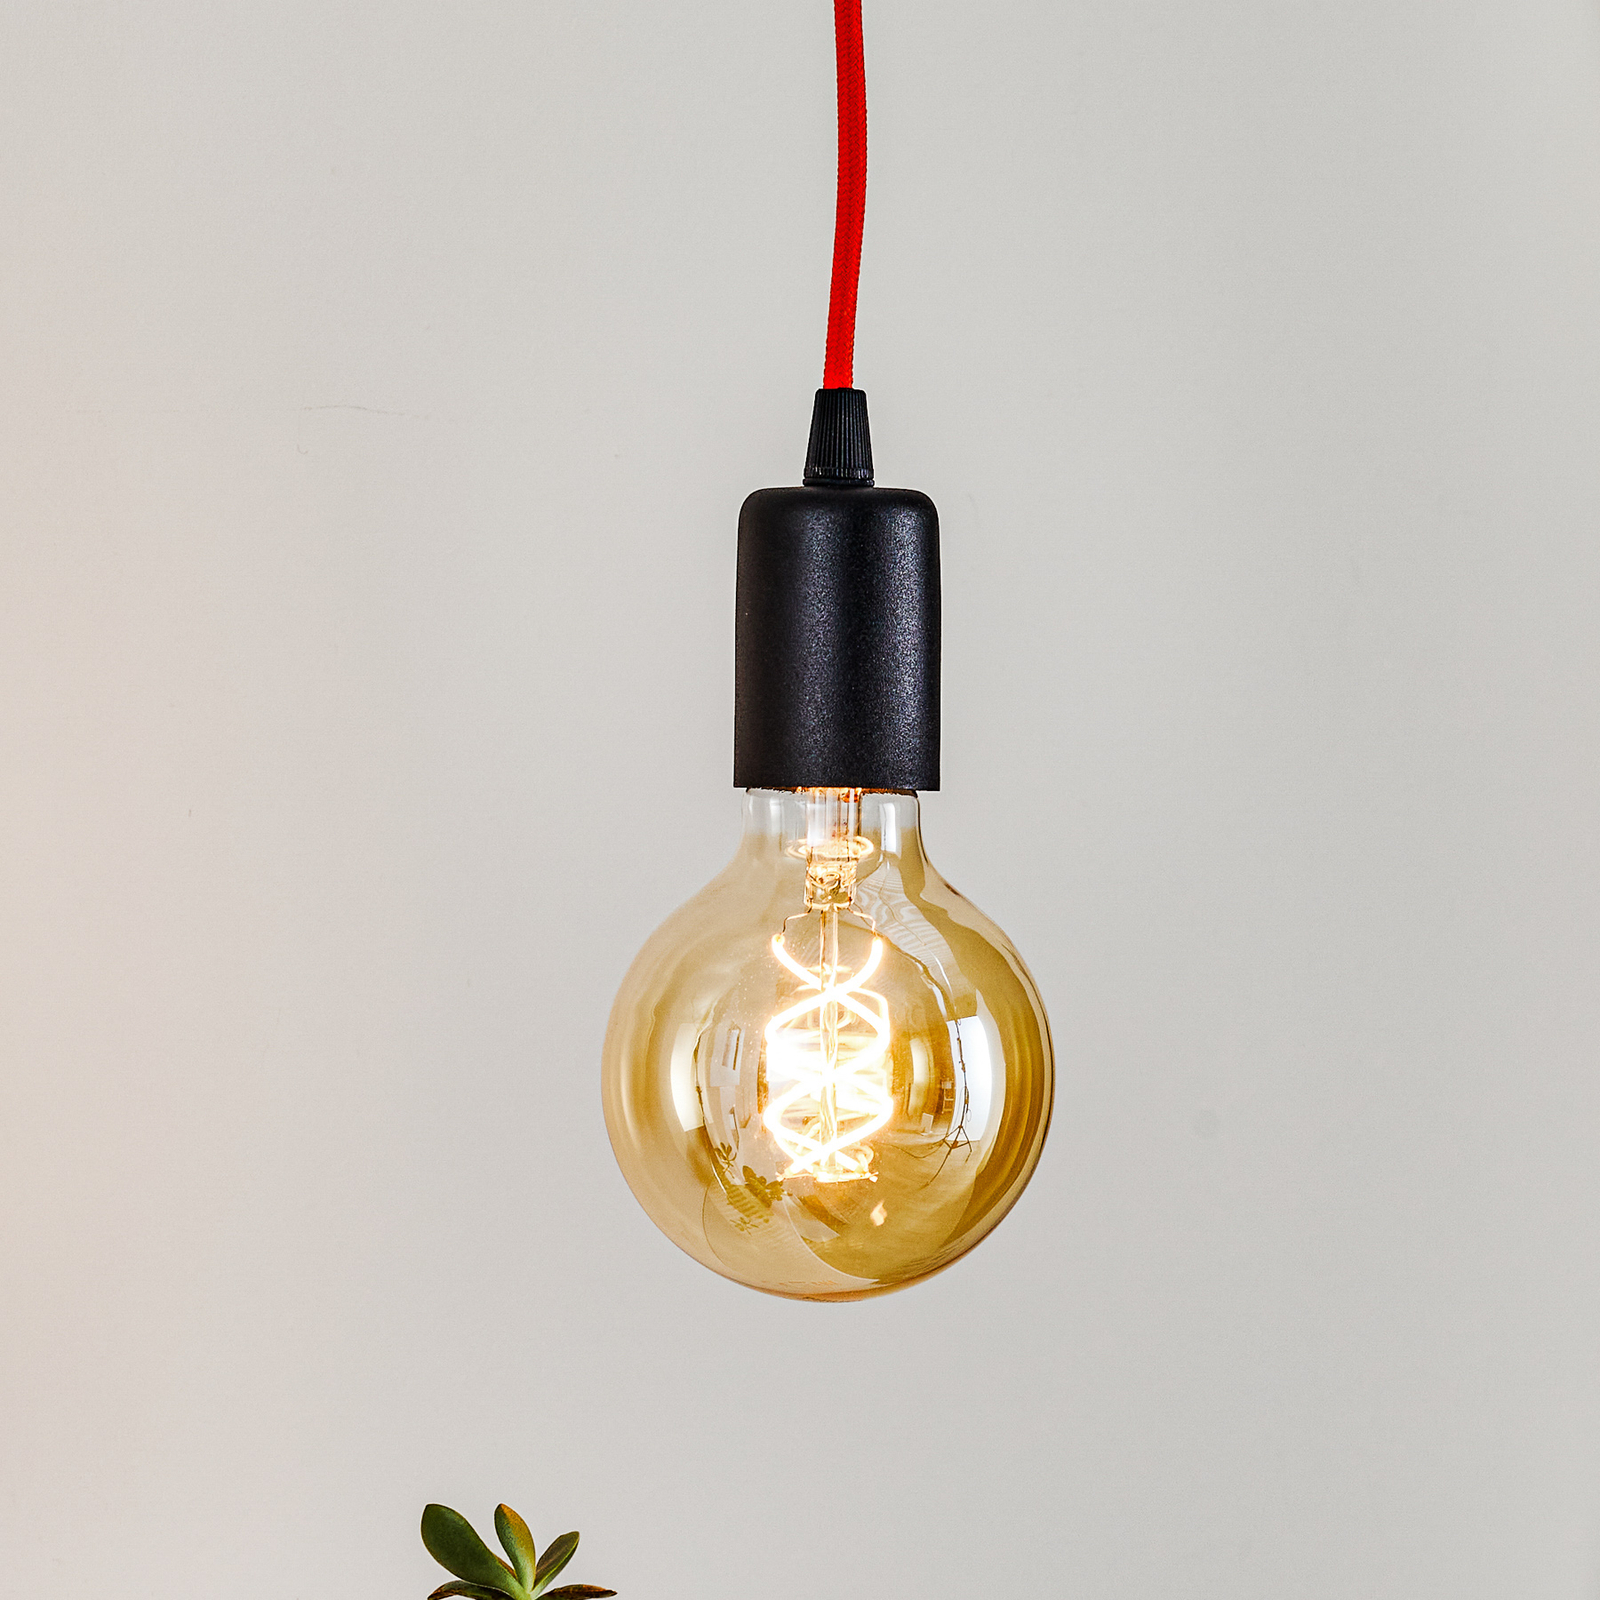 Communistisch borstel Alert Hanglamp Simple, zwart, kabel oranje | Lampen24.be